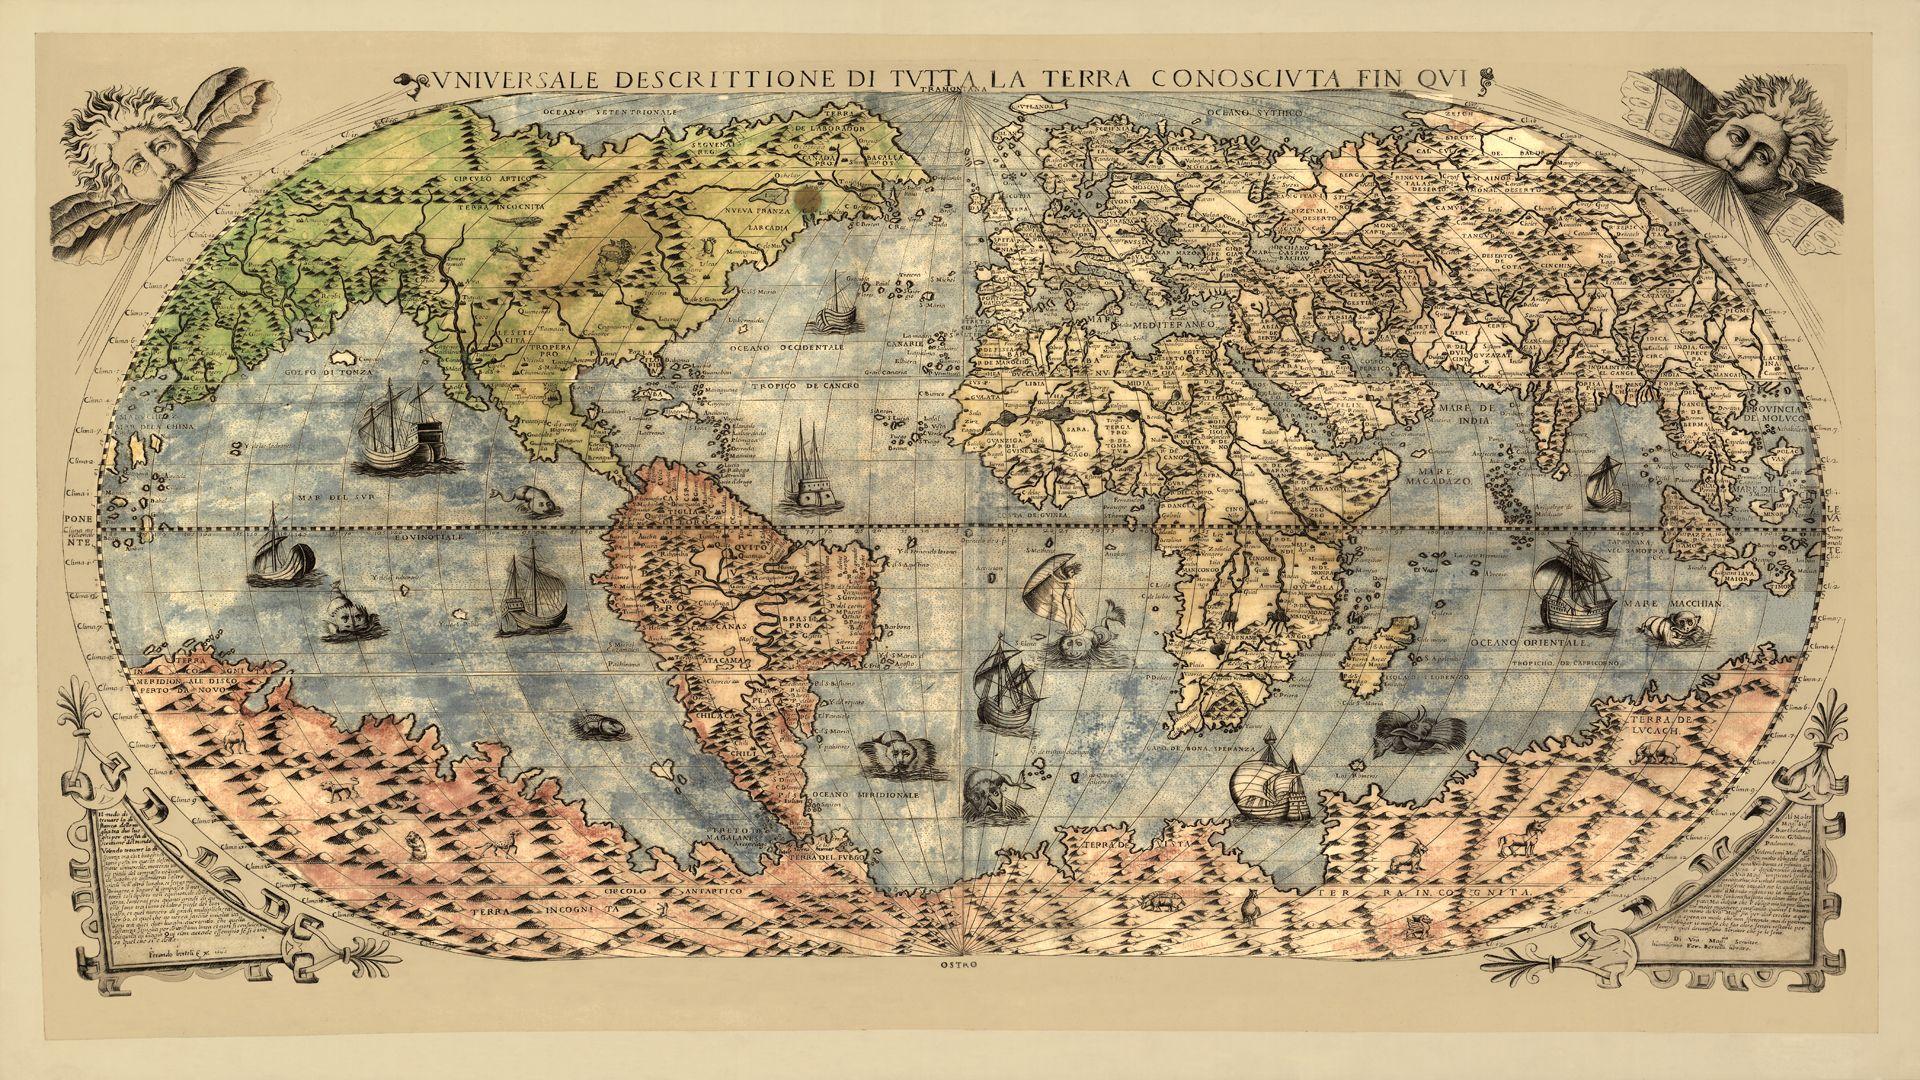 vintage world map desktop wallpaper